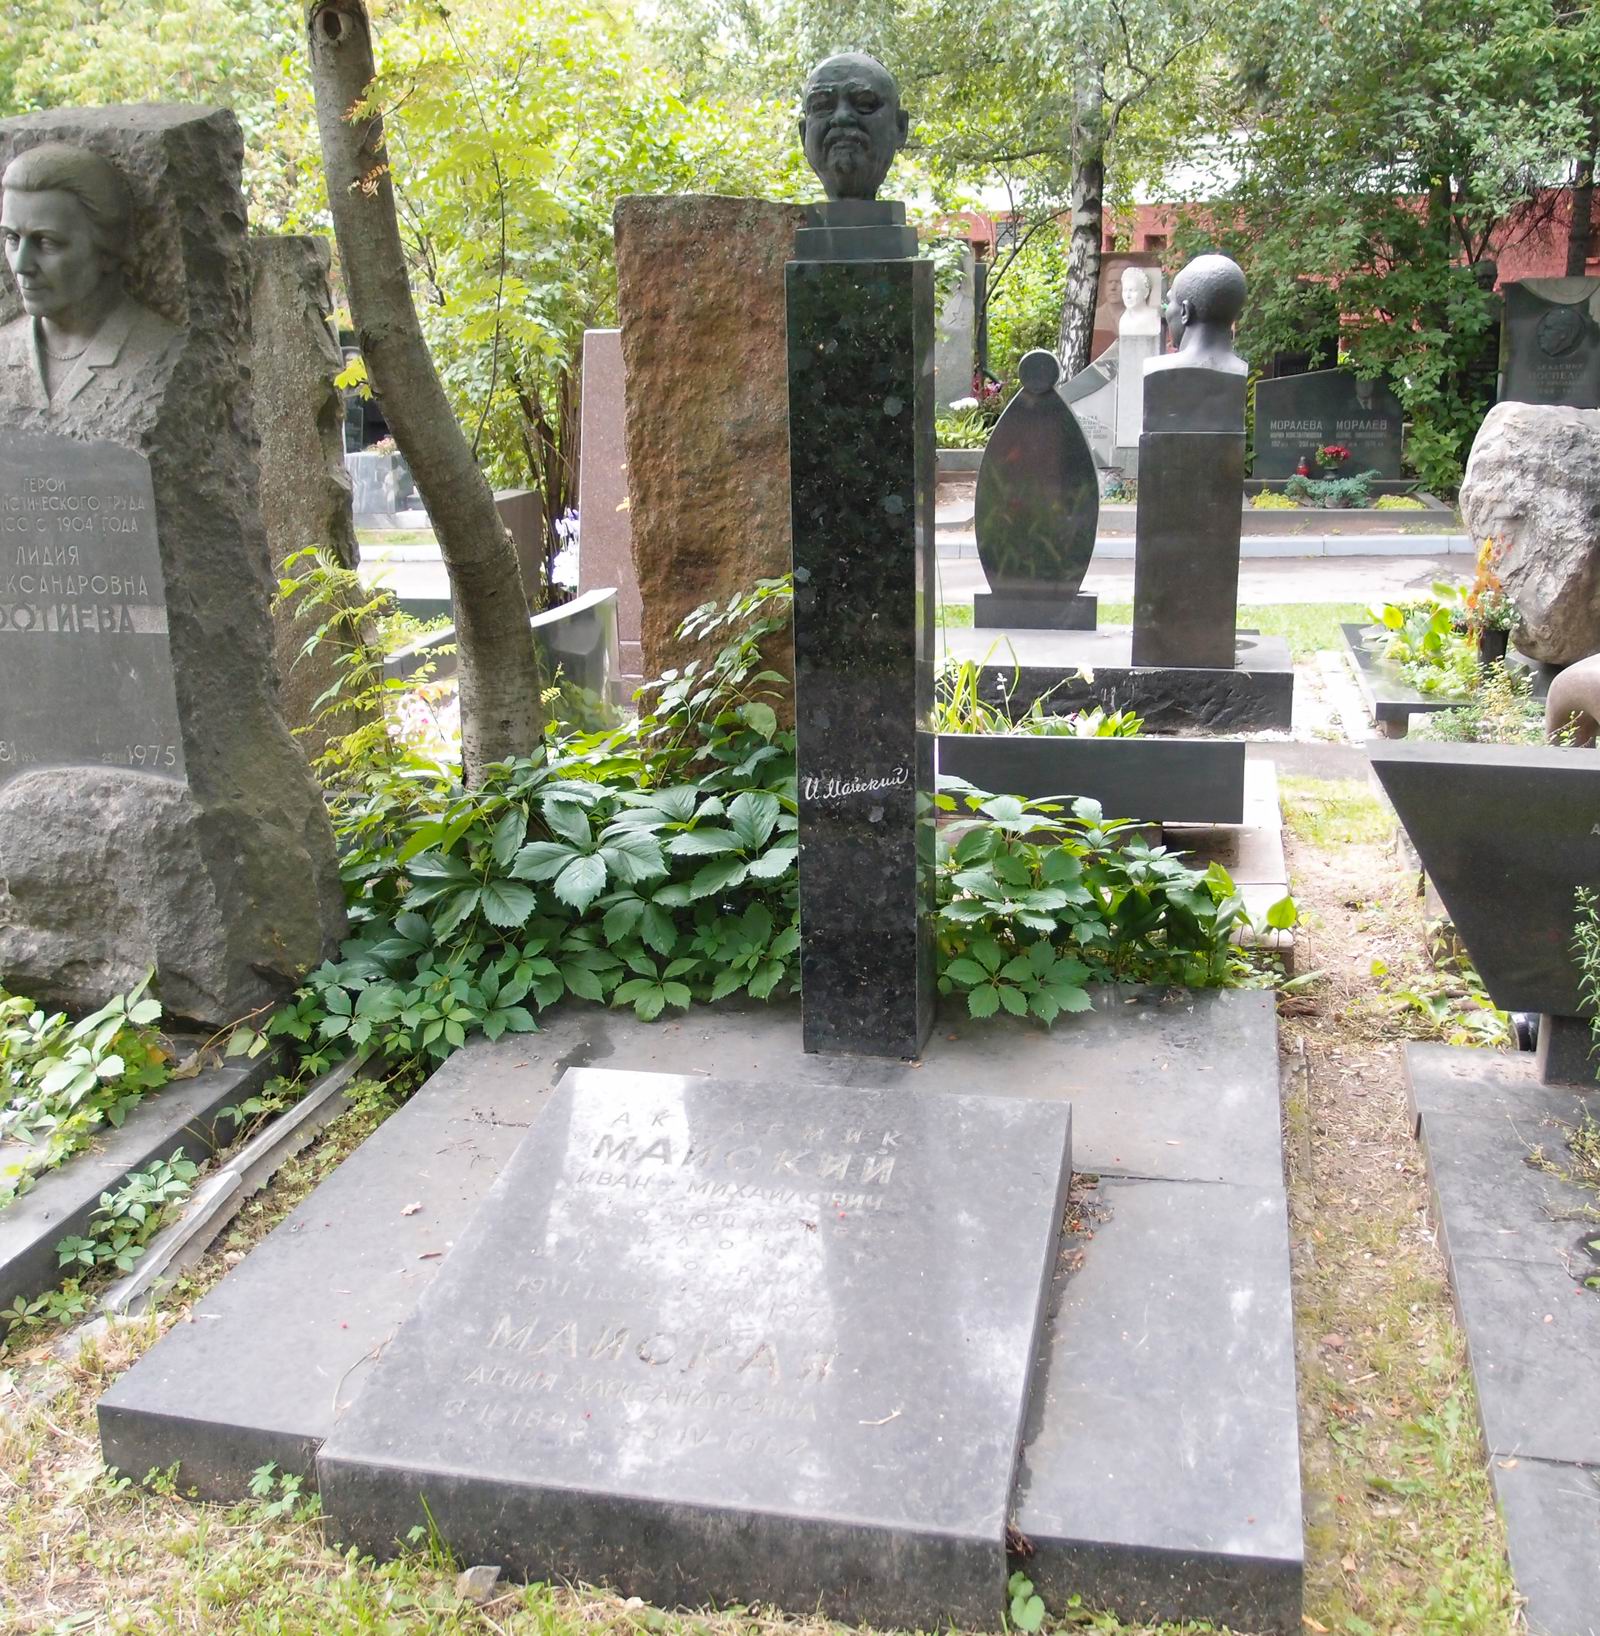 Памятник на могиле Майского И.М. (1884–1975), ск. Н.Никогосян, арх. Т.Никогосян, на Новодевичьем кладбище (9–1–7). Нажмите левую кнопку мыши чтобы увидеть фрагмент памятника.